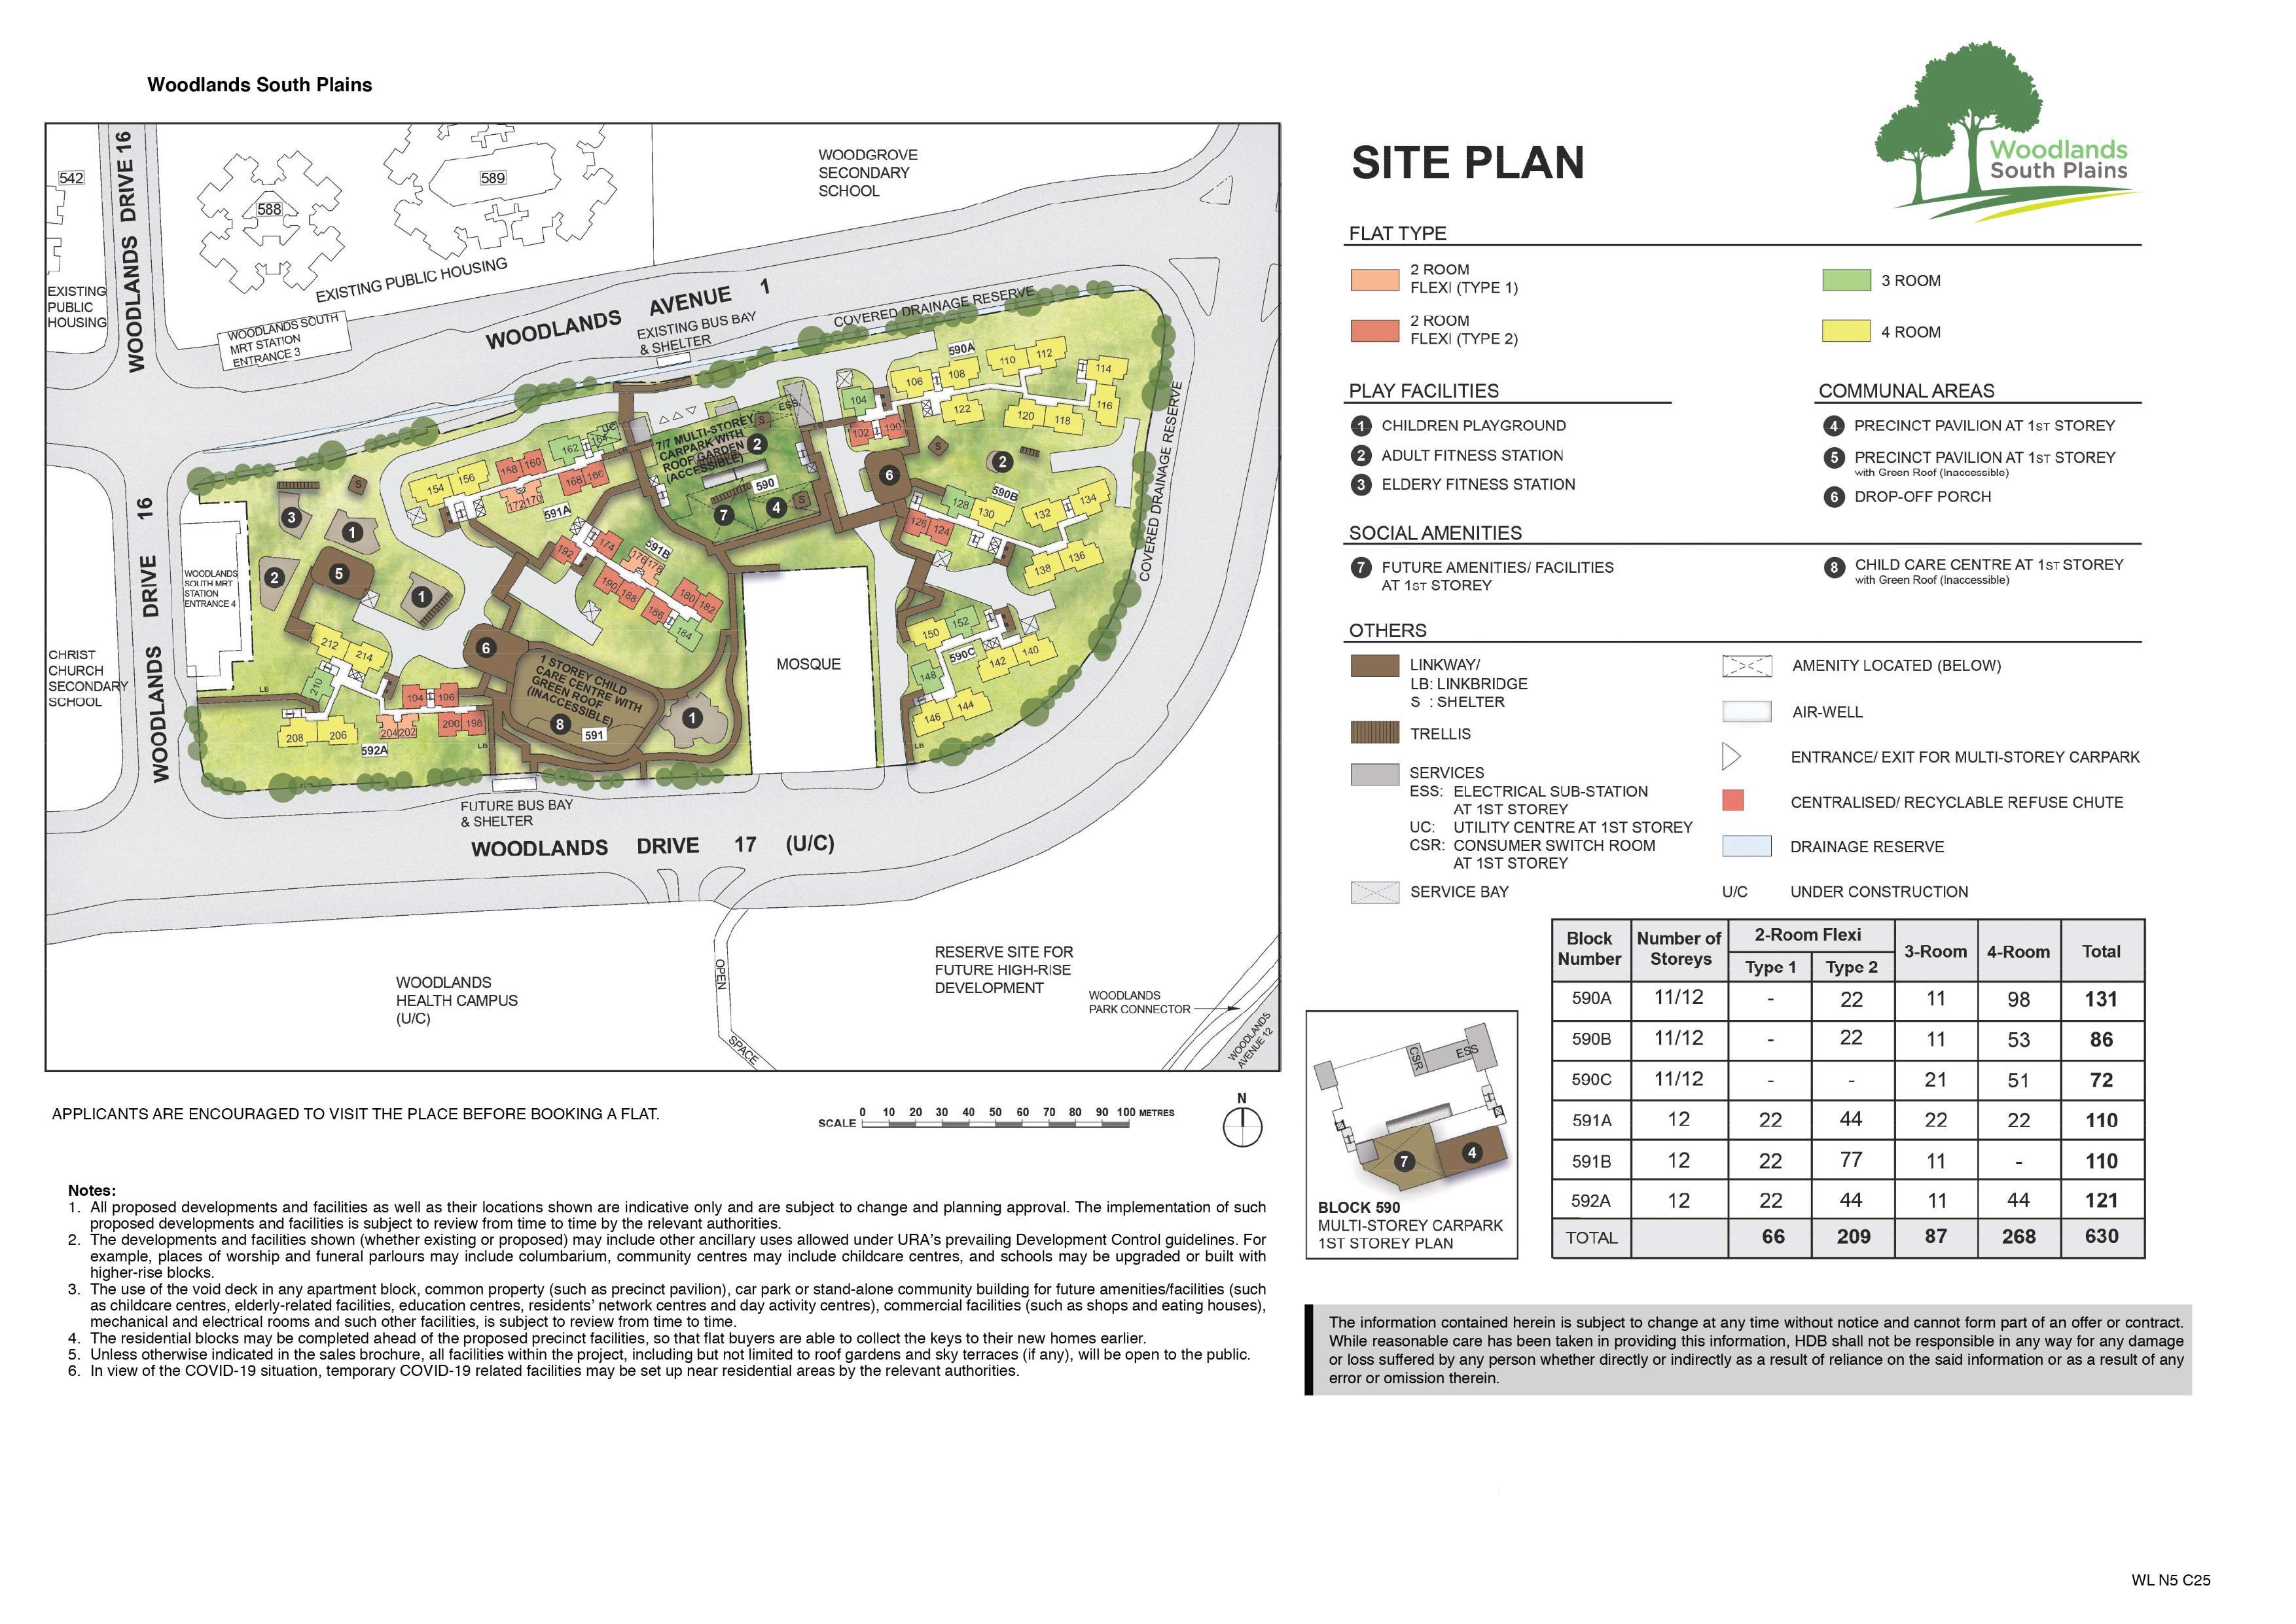 Woodlands South Plains site-plan